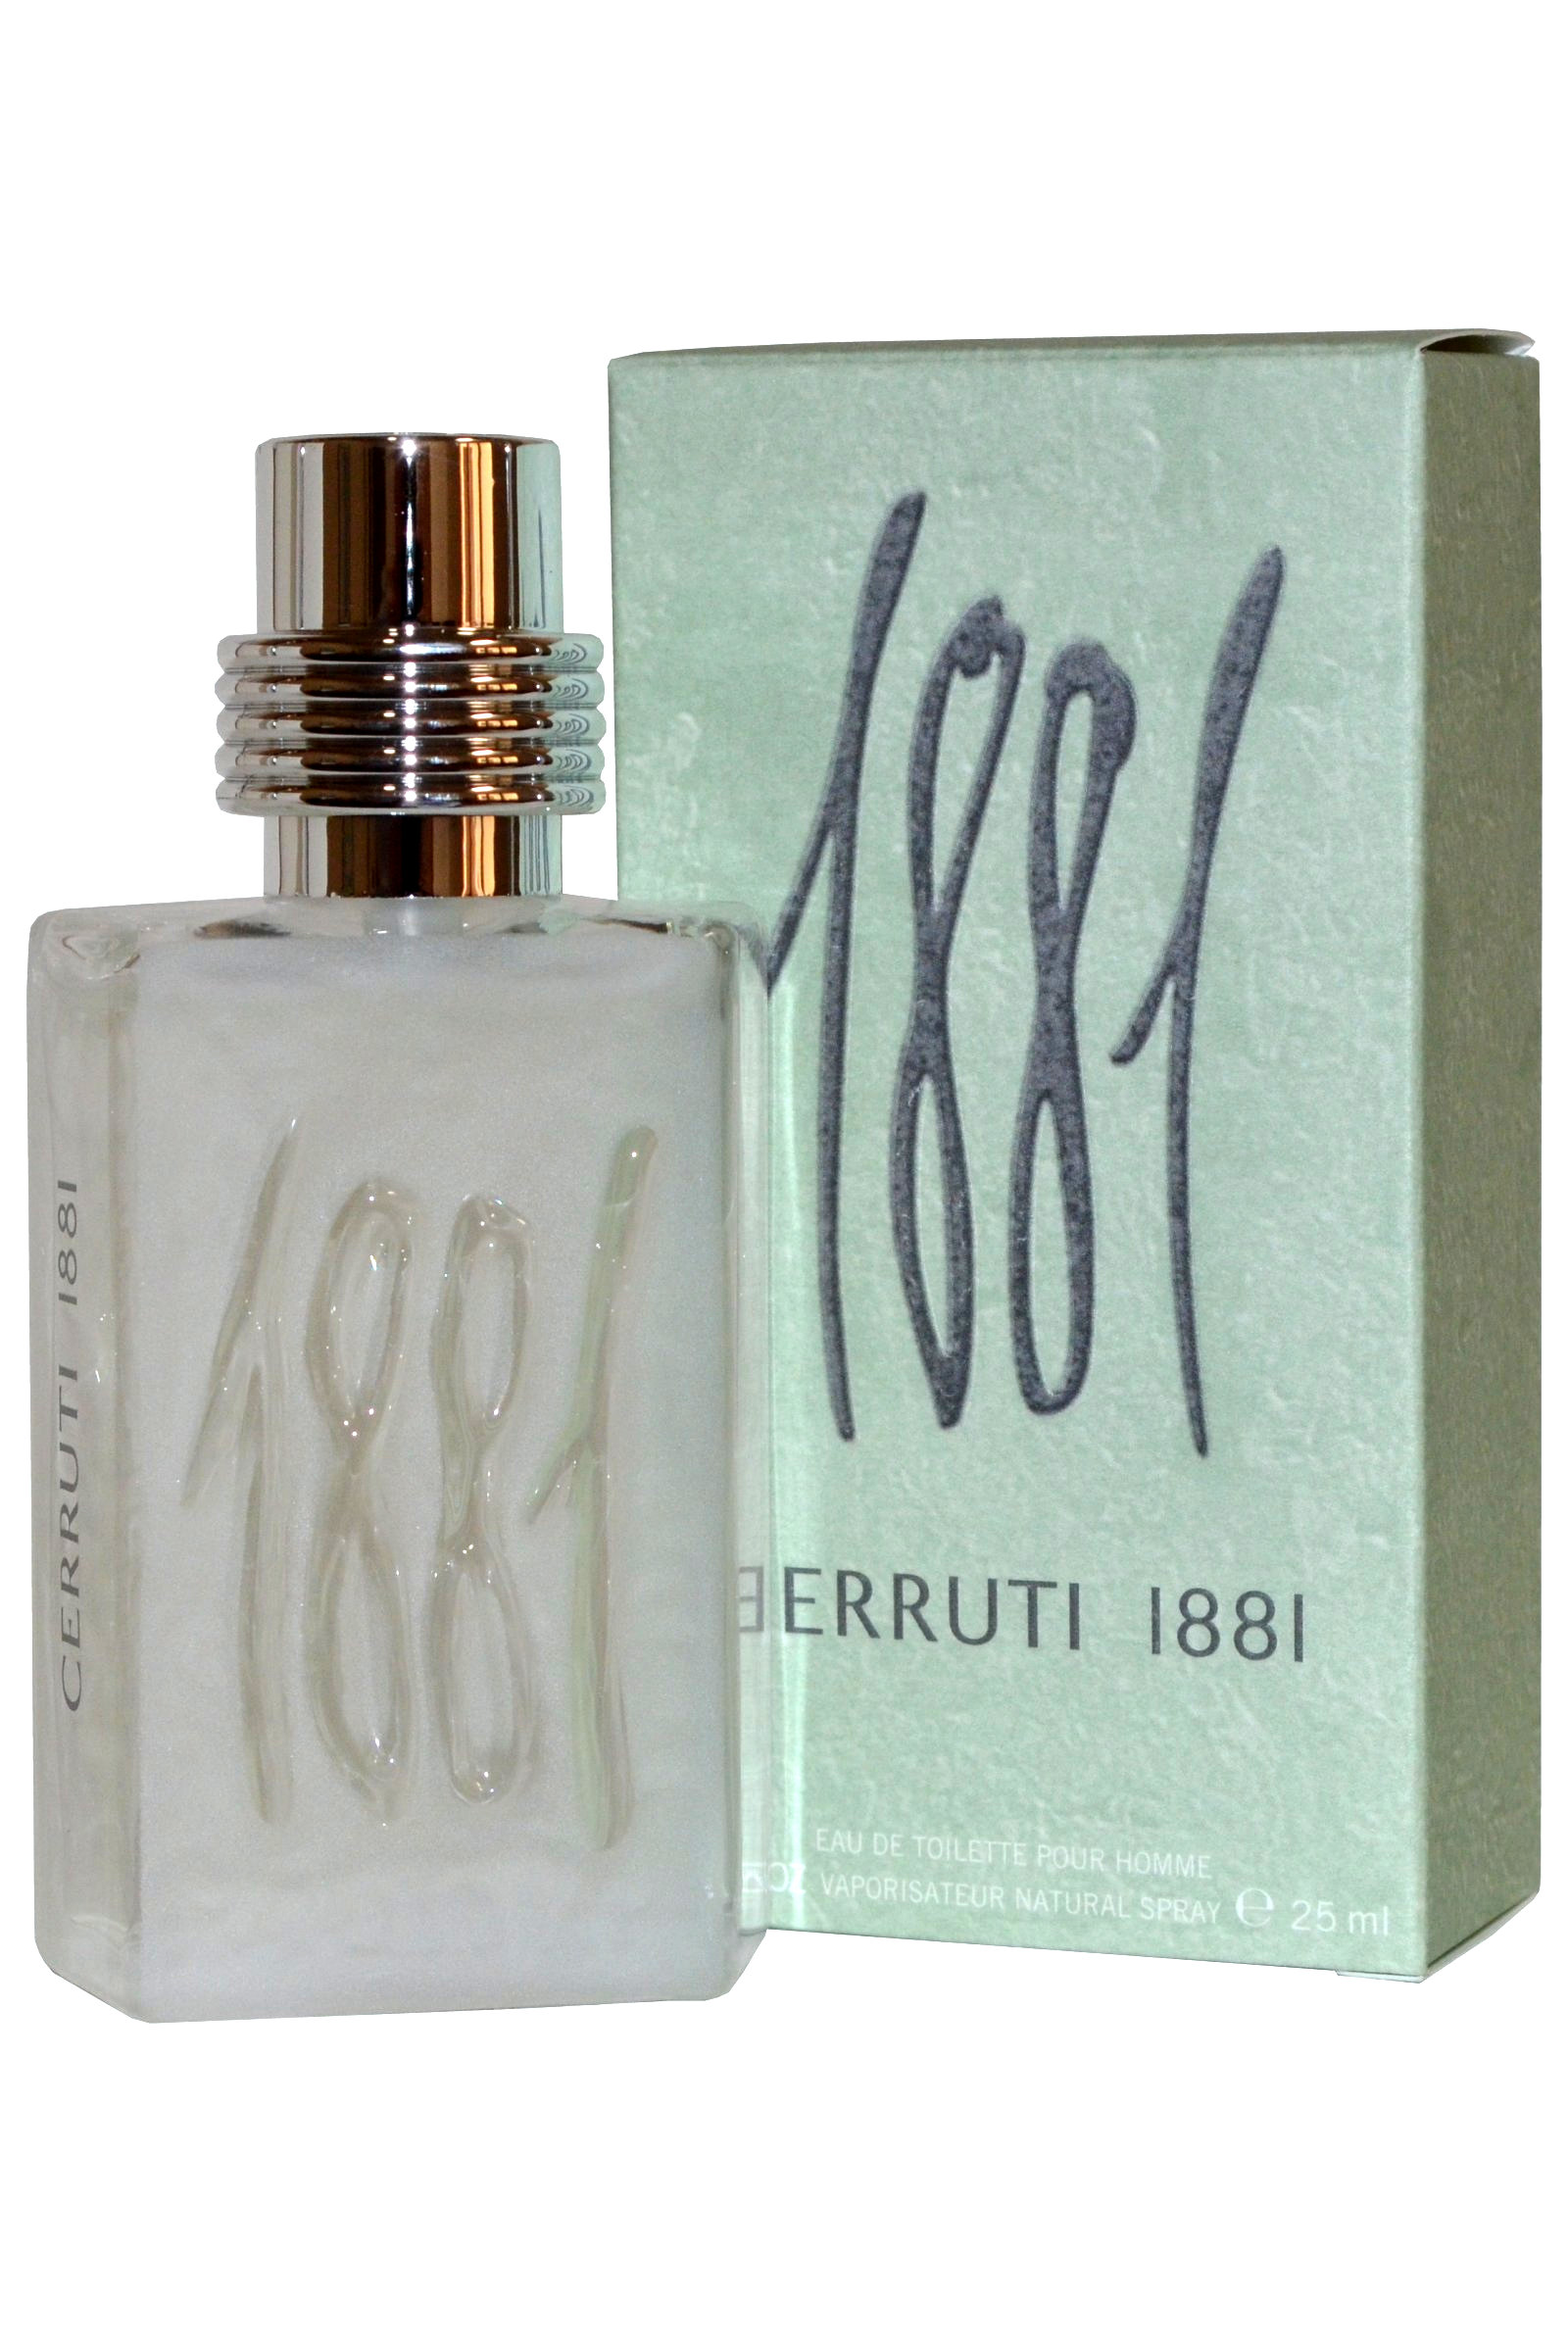 Cerruti 1881 Pour Homme EDT Eau de Toilette Spray 25ml Mens Fragrance ...